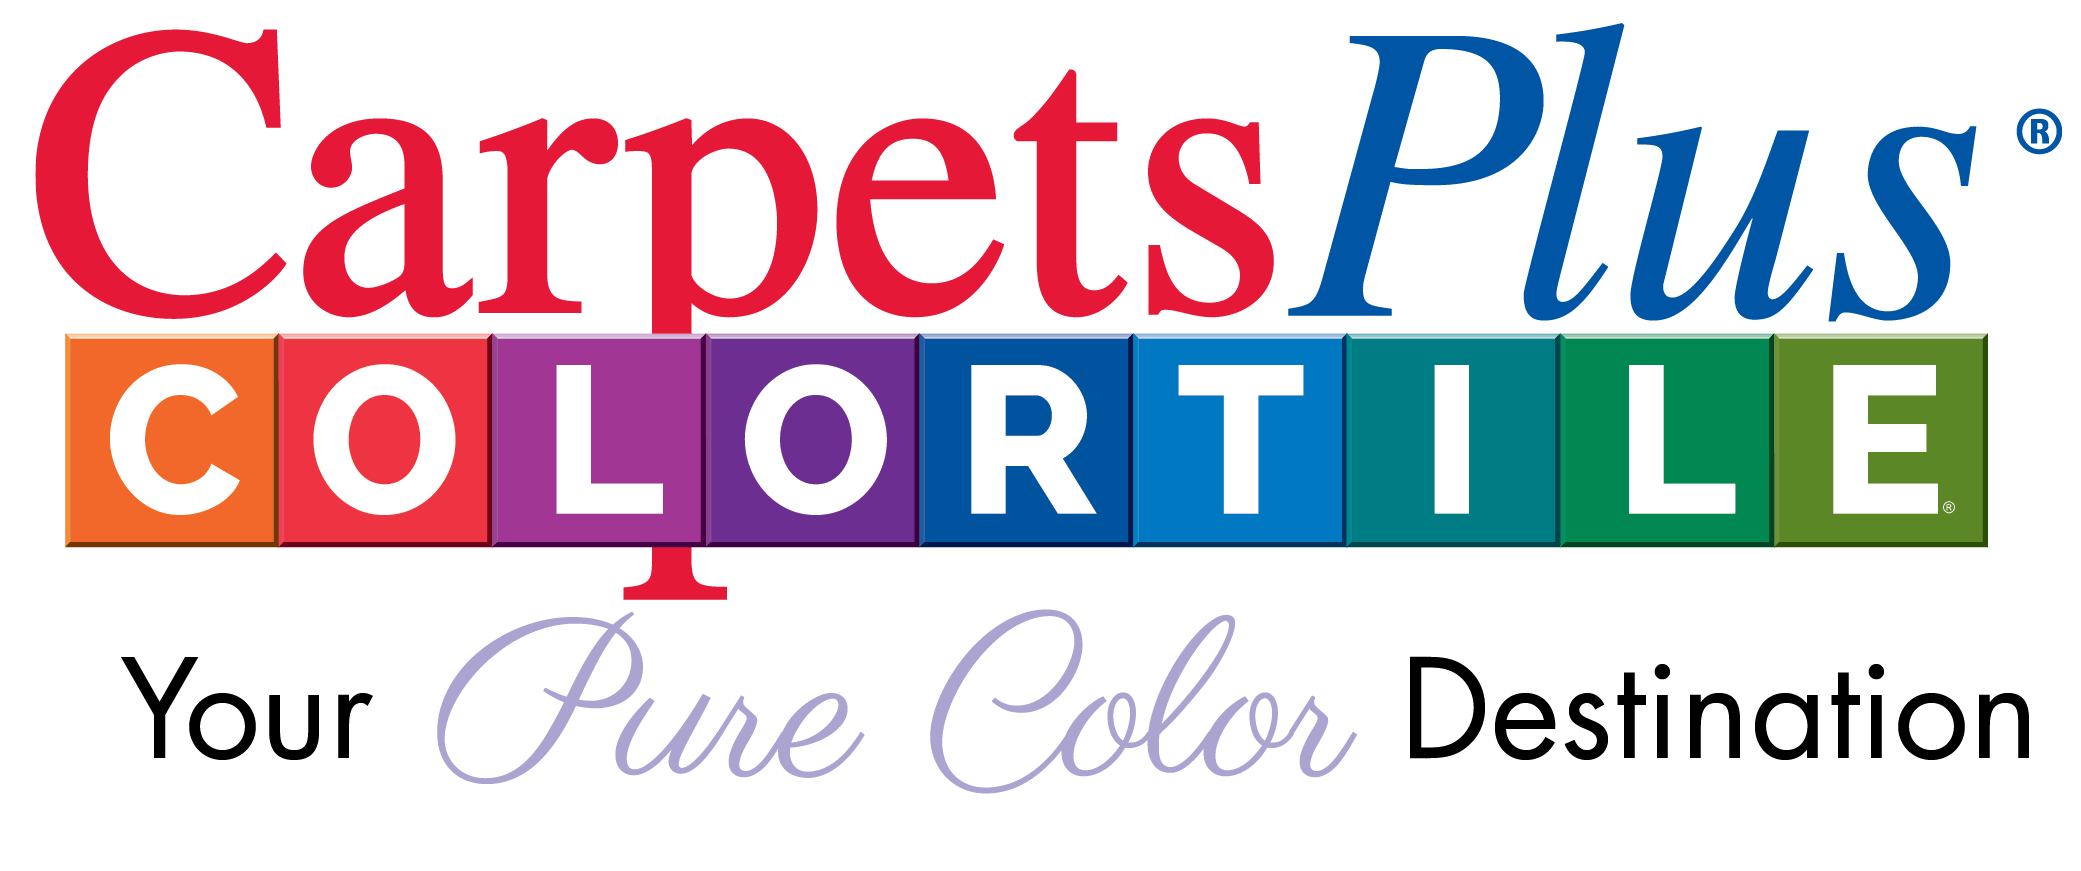 Carpetsplus colortile your pure color destination logo | Carpet Collection